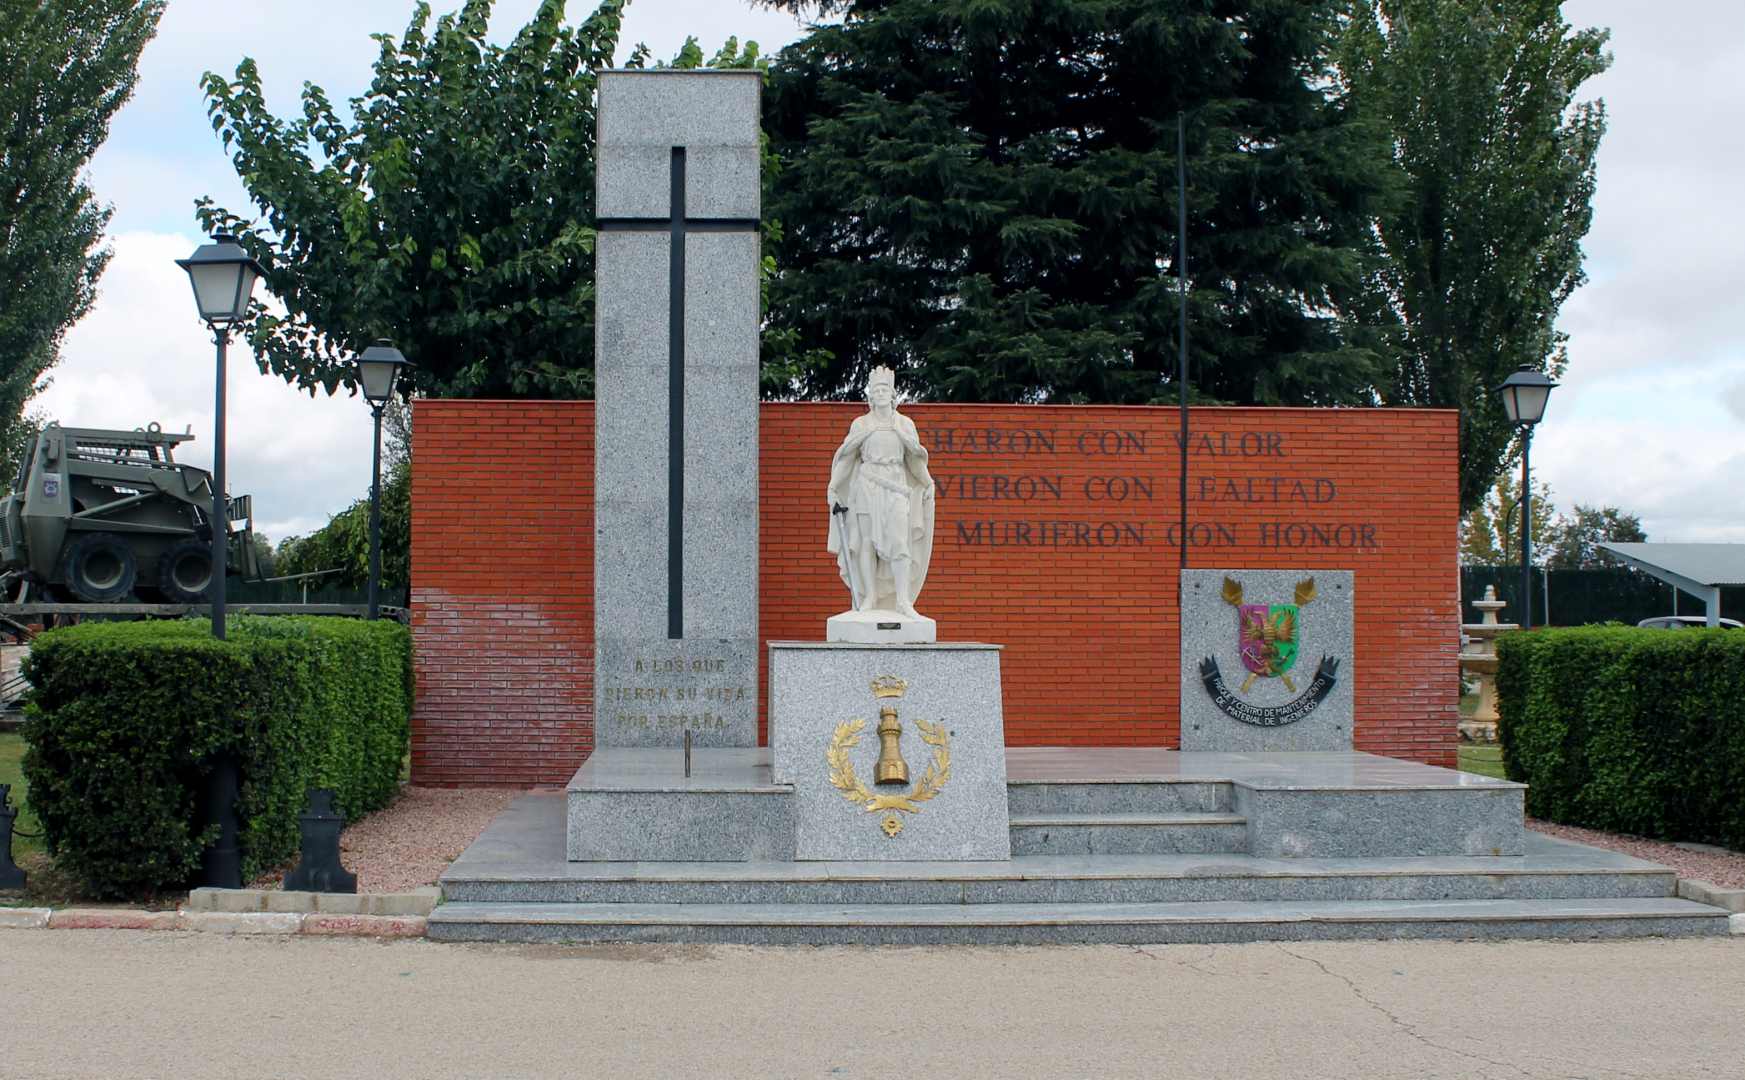 Monumento a los caídos con el escudo de la unidad.